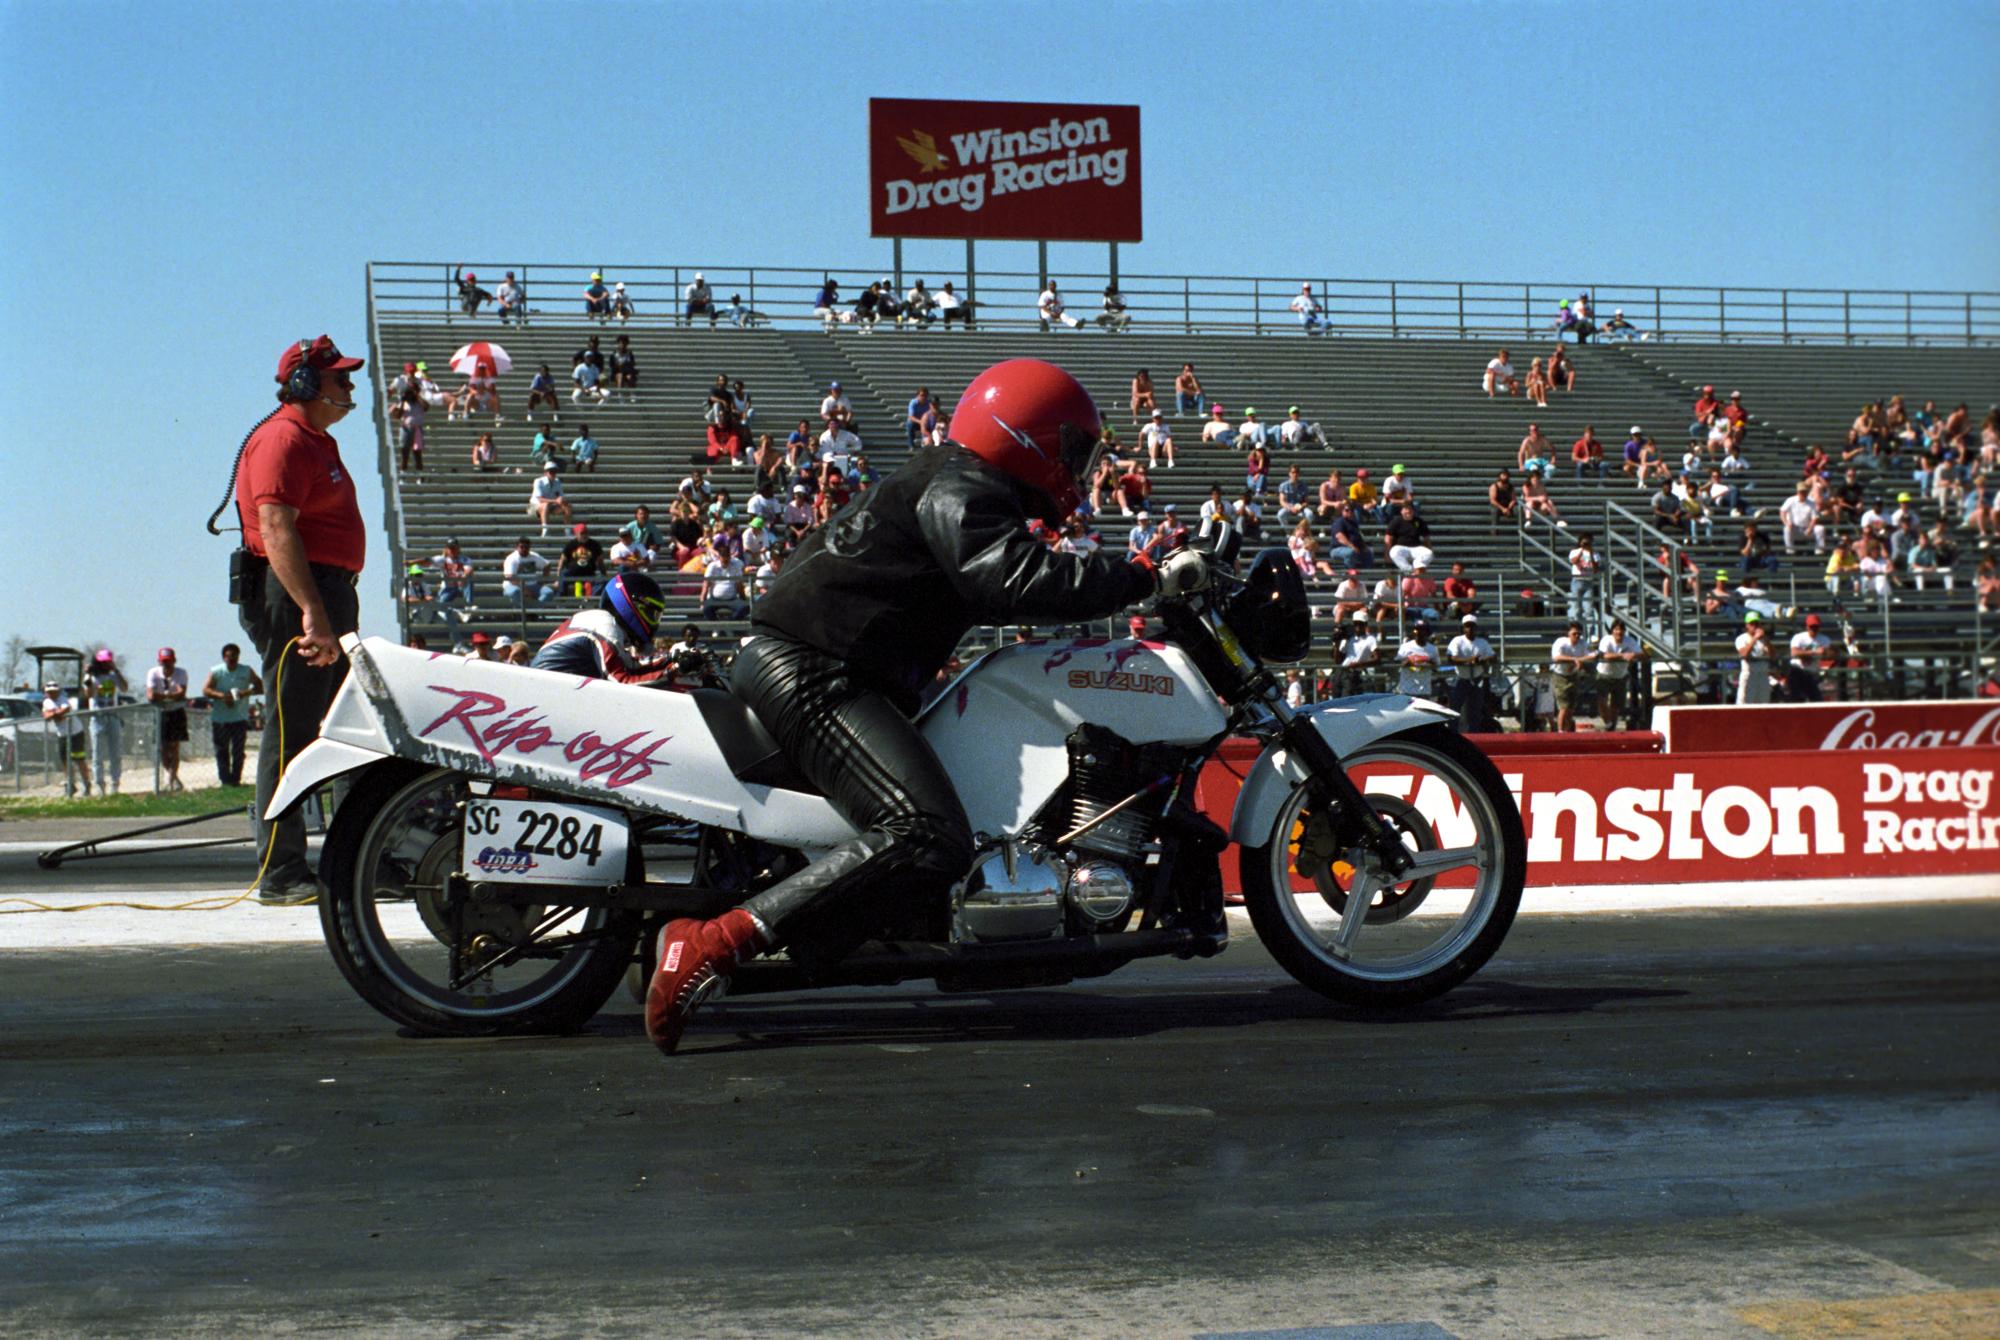 Texas Motor Drag Racing (1991) - Texas Motorcycle Drag Racing #3